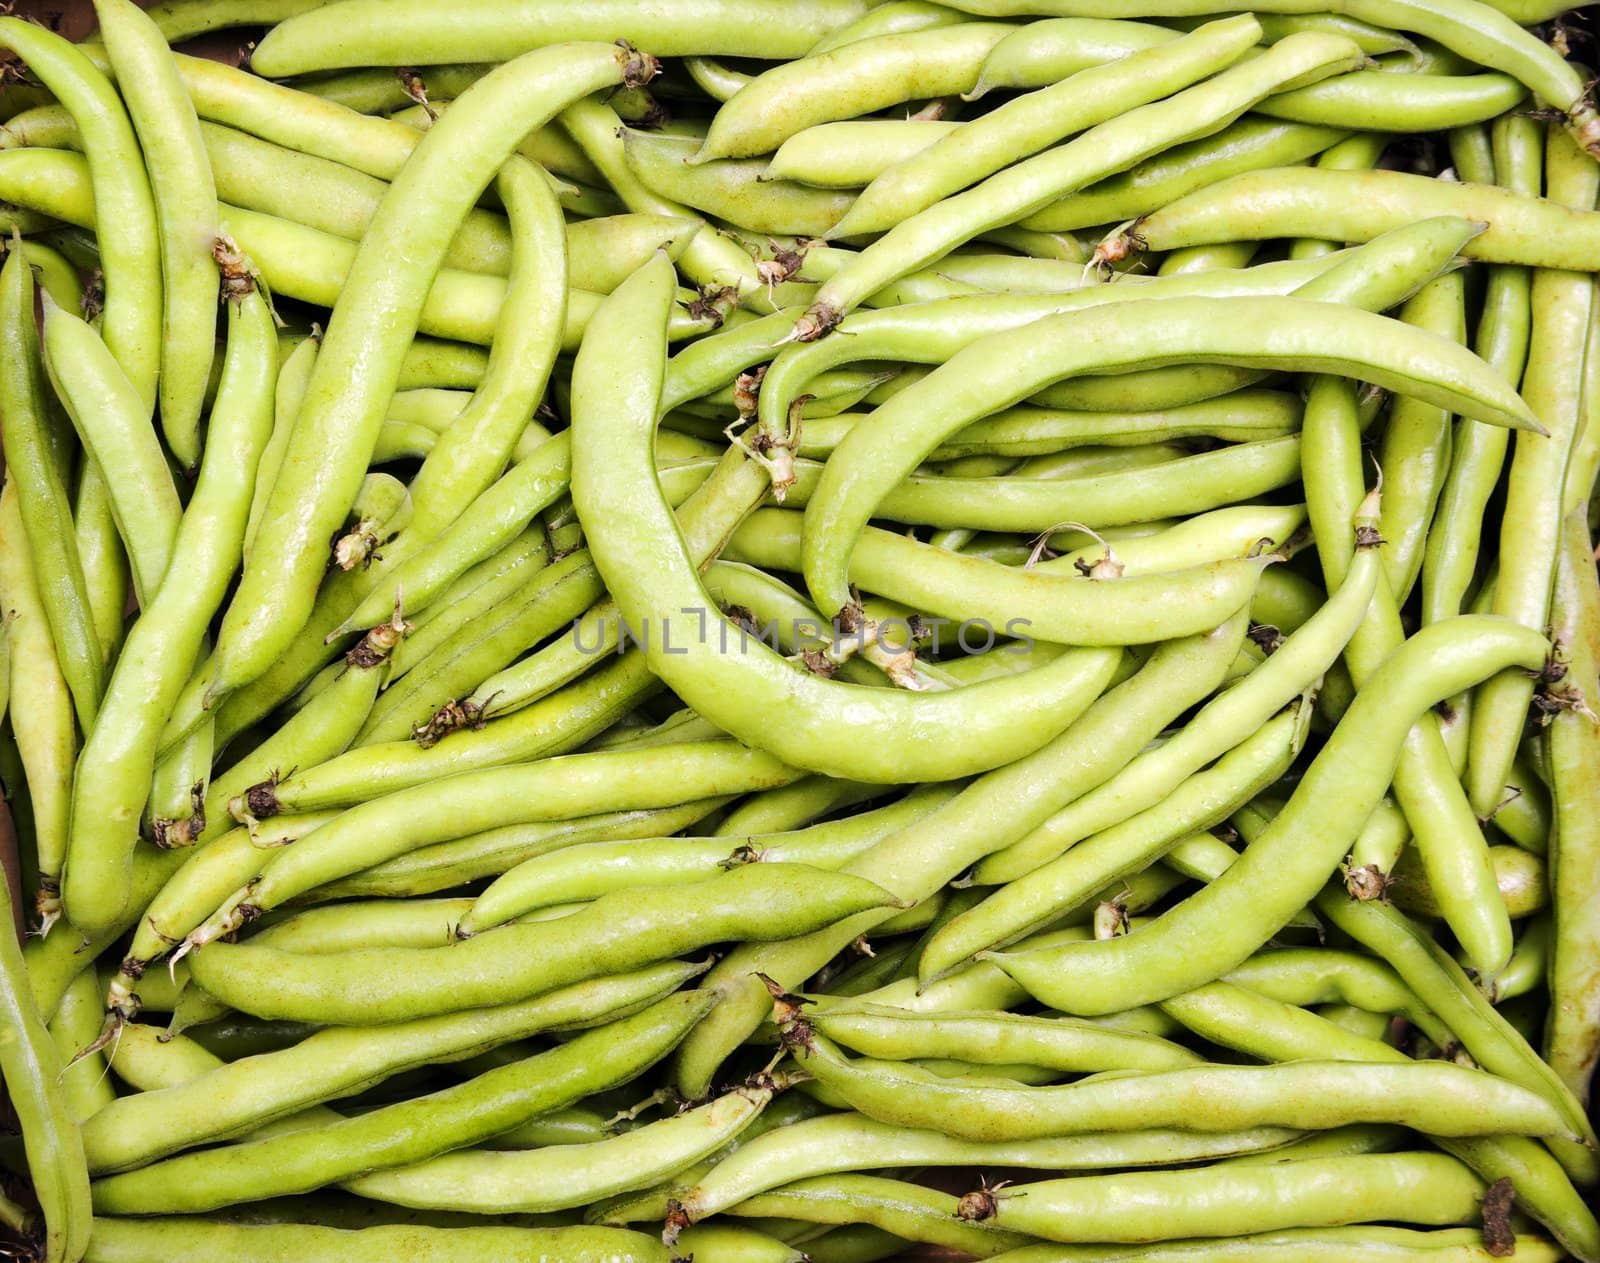 Crisp Green Fava Beans Filling the Frame